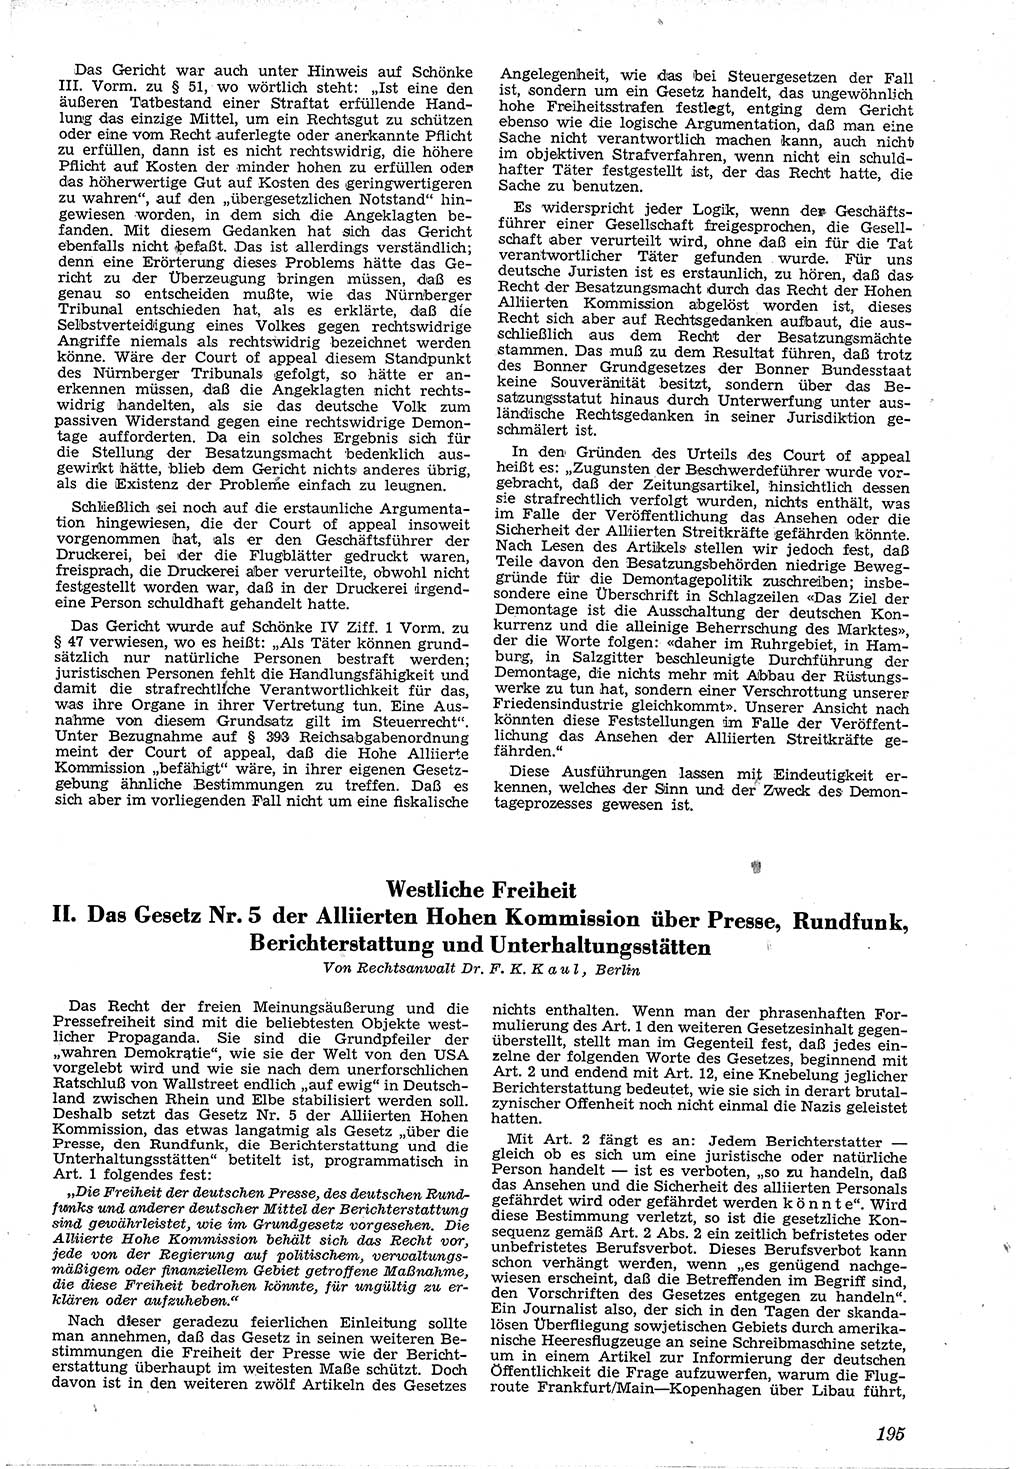 Neue Justiz (NJ), Zeitschrift für Recht und Rechtswissenschaft [Deutsche Demokratische Republik (DDR)], 4. Jahrgang 1950, Seite 195 (NJ DDR 1950, S. 195)